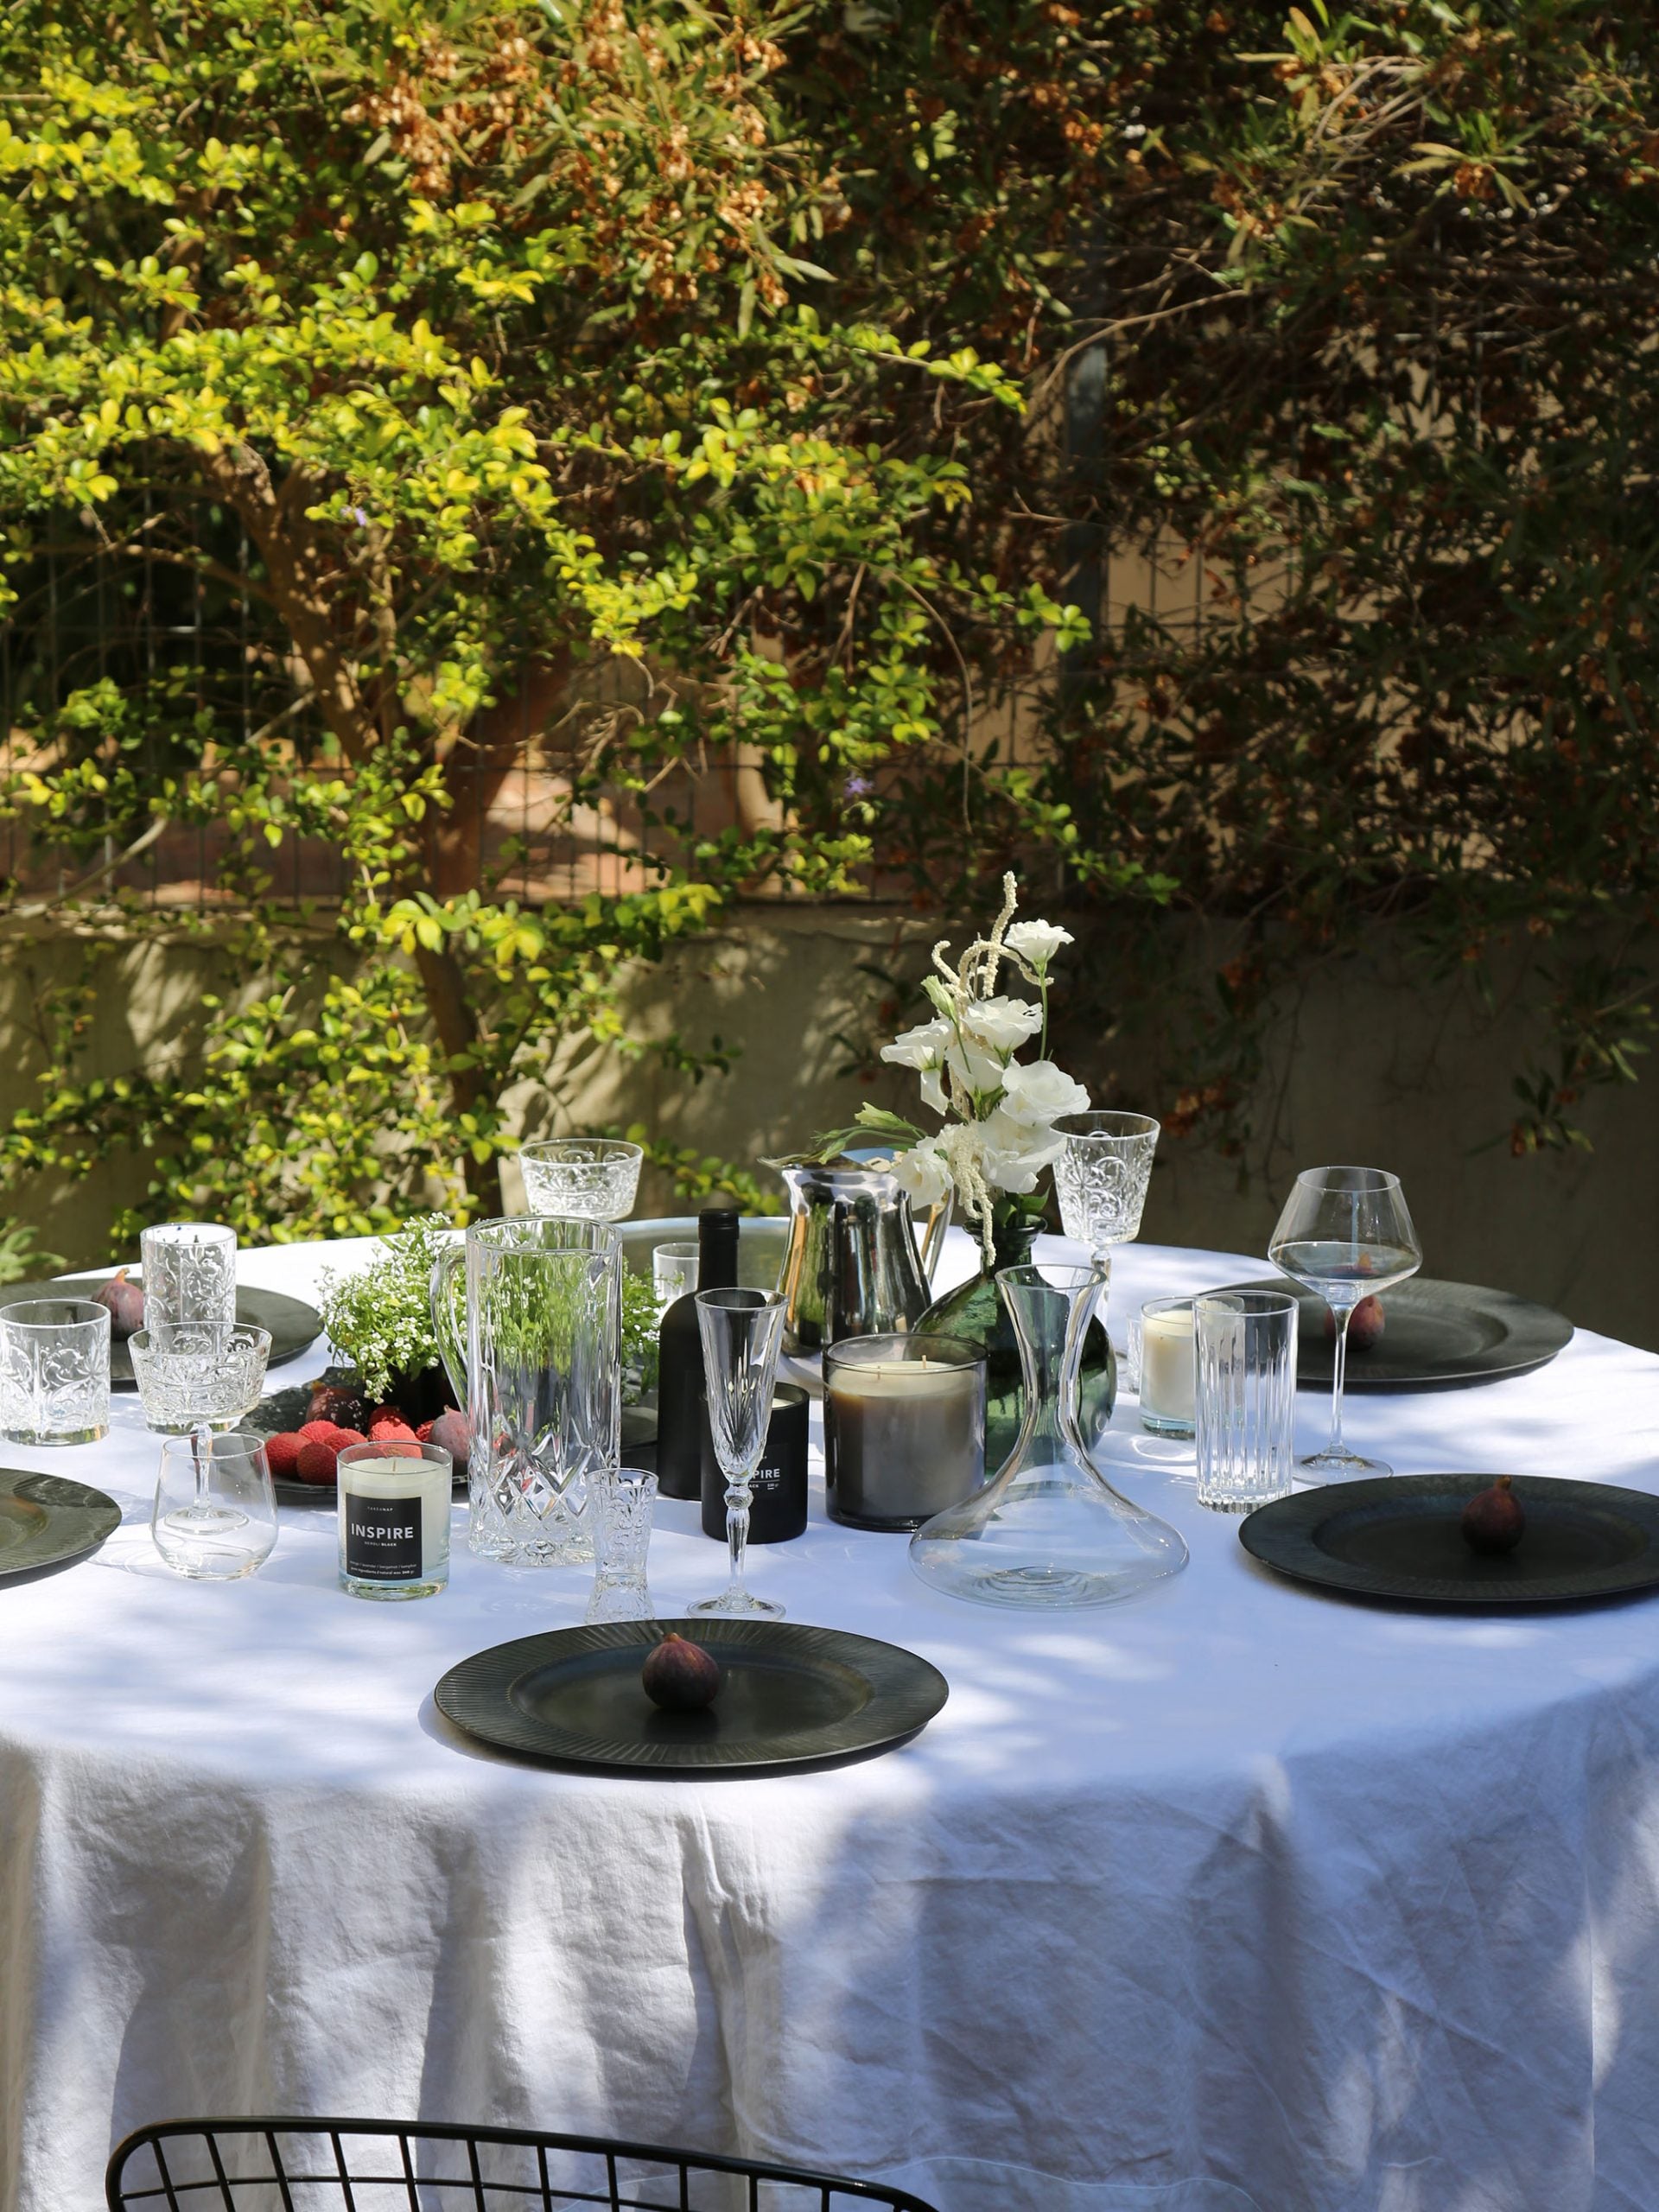 כוסות שמפנייה, צלחות מעוצבות ונרות ריחניים על שולחן בחוץ עם מפה לבנה